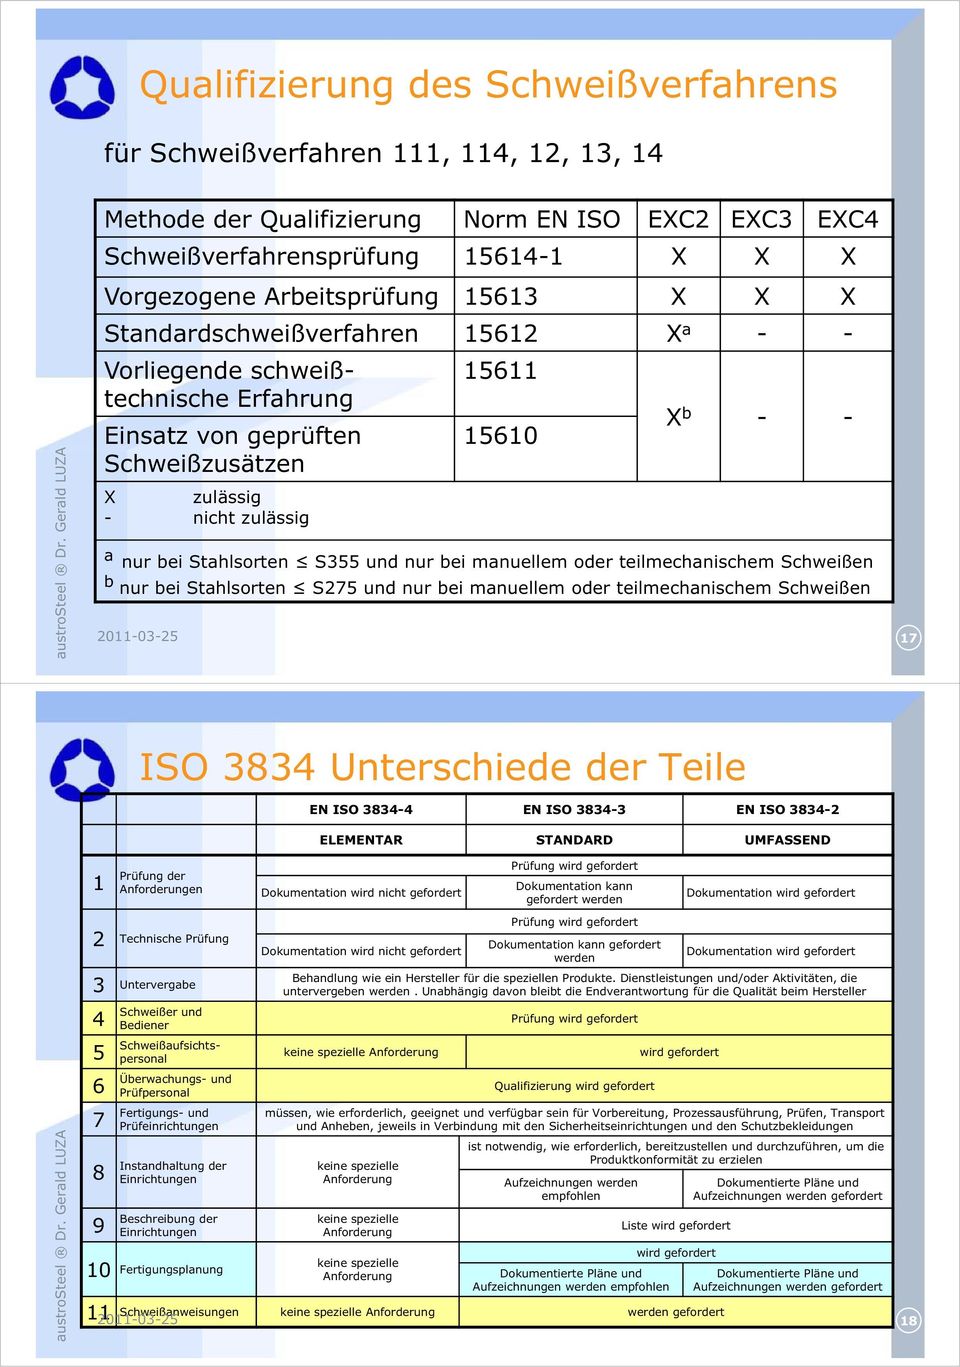 S355 und nur bei manuellem oder teilmechanischem Schweißen b nur bei Stahlsorten S275 und nur bei manuellem oder teilmechanischem Schweißen 17 ISO 3834 Unterschiede der Teile EN ISO 3834-4 EN ISO